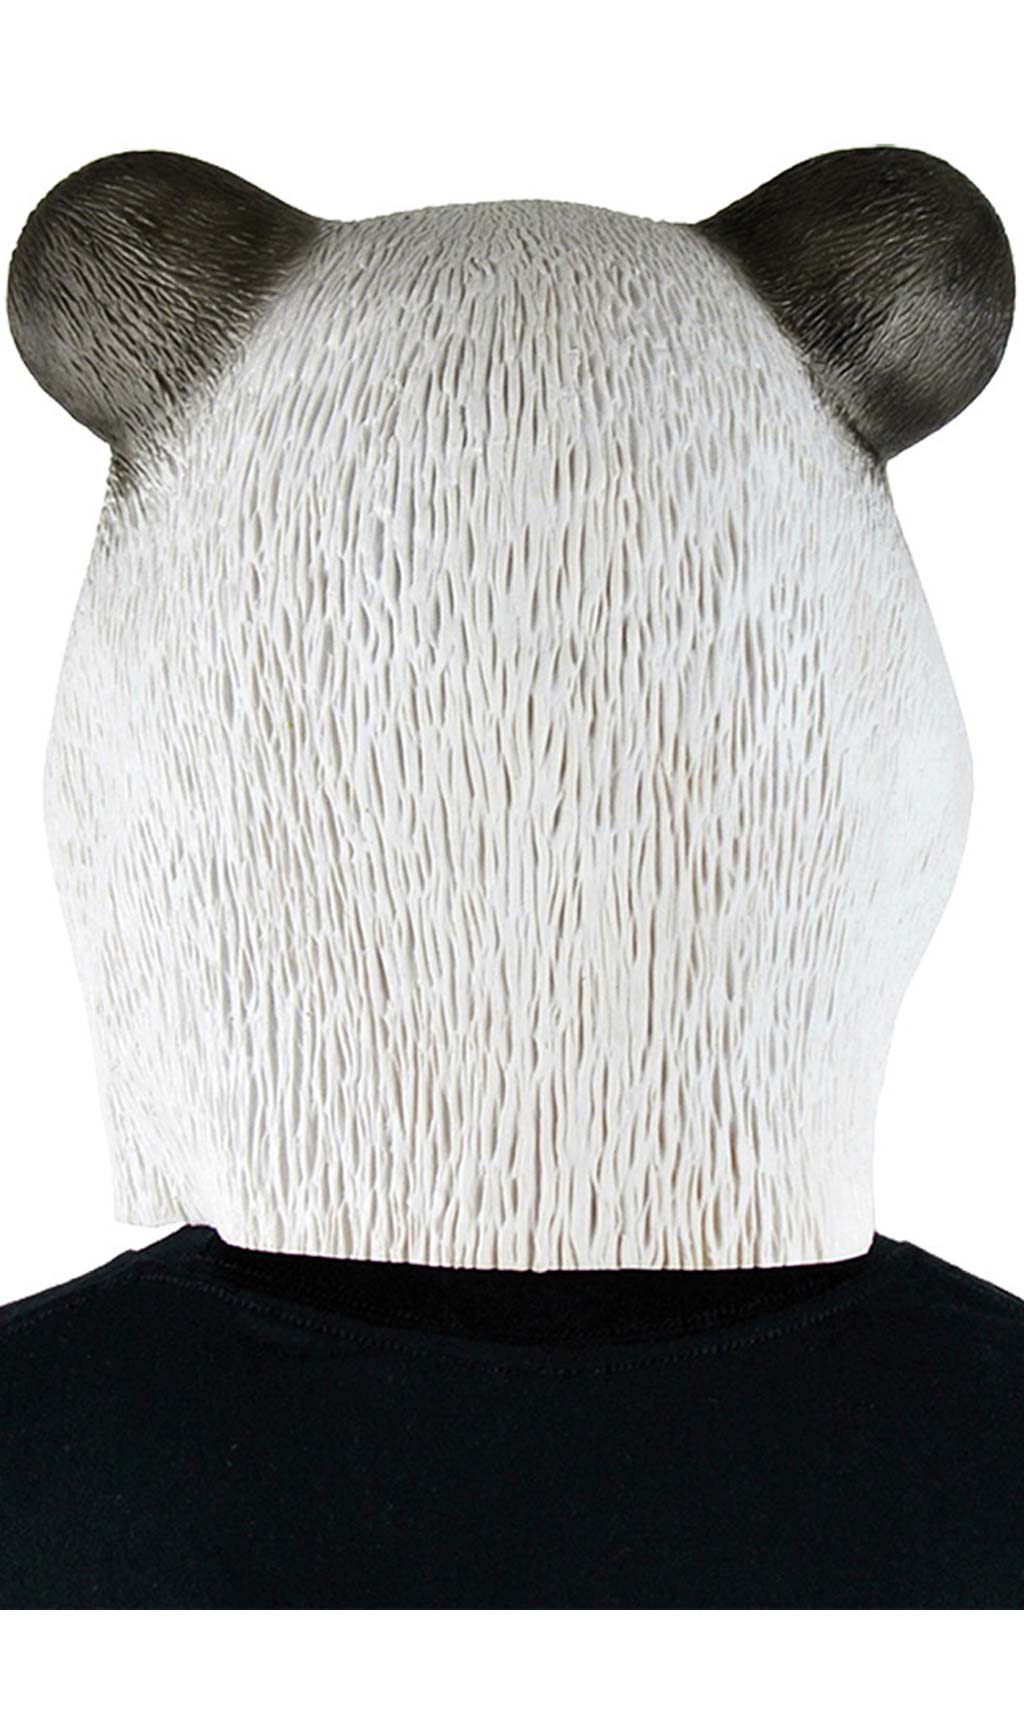 Máscara de látex de Oso Panda